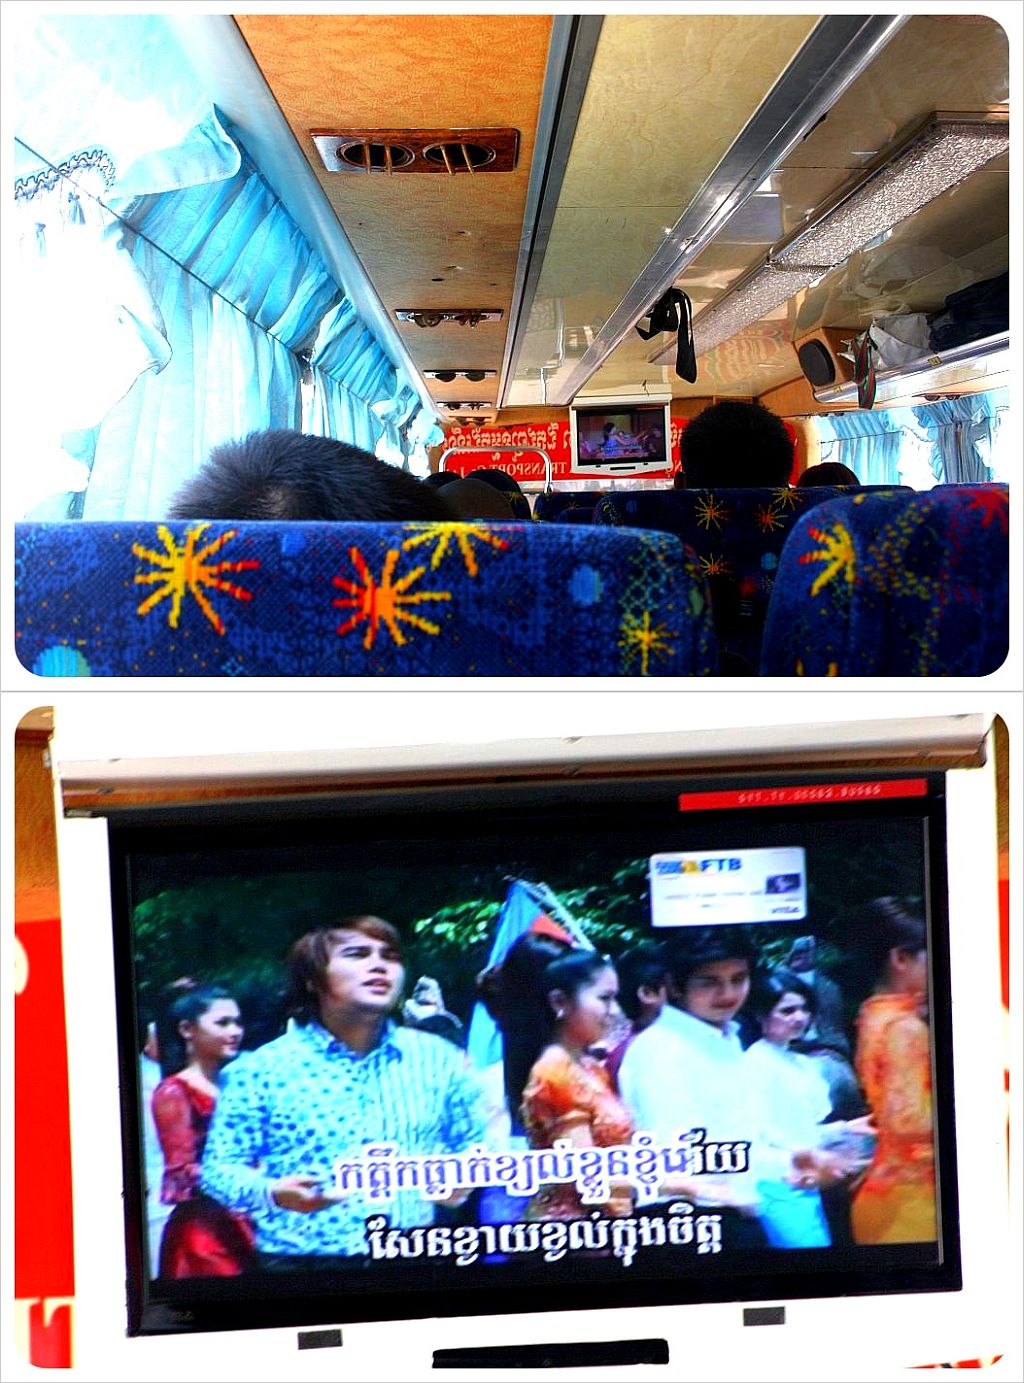 cambodia karaoke on buses